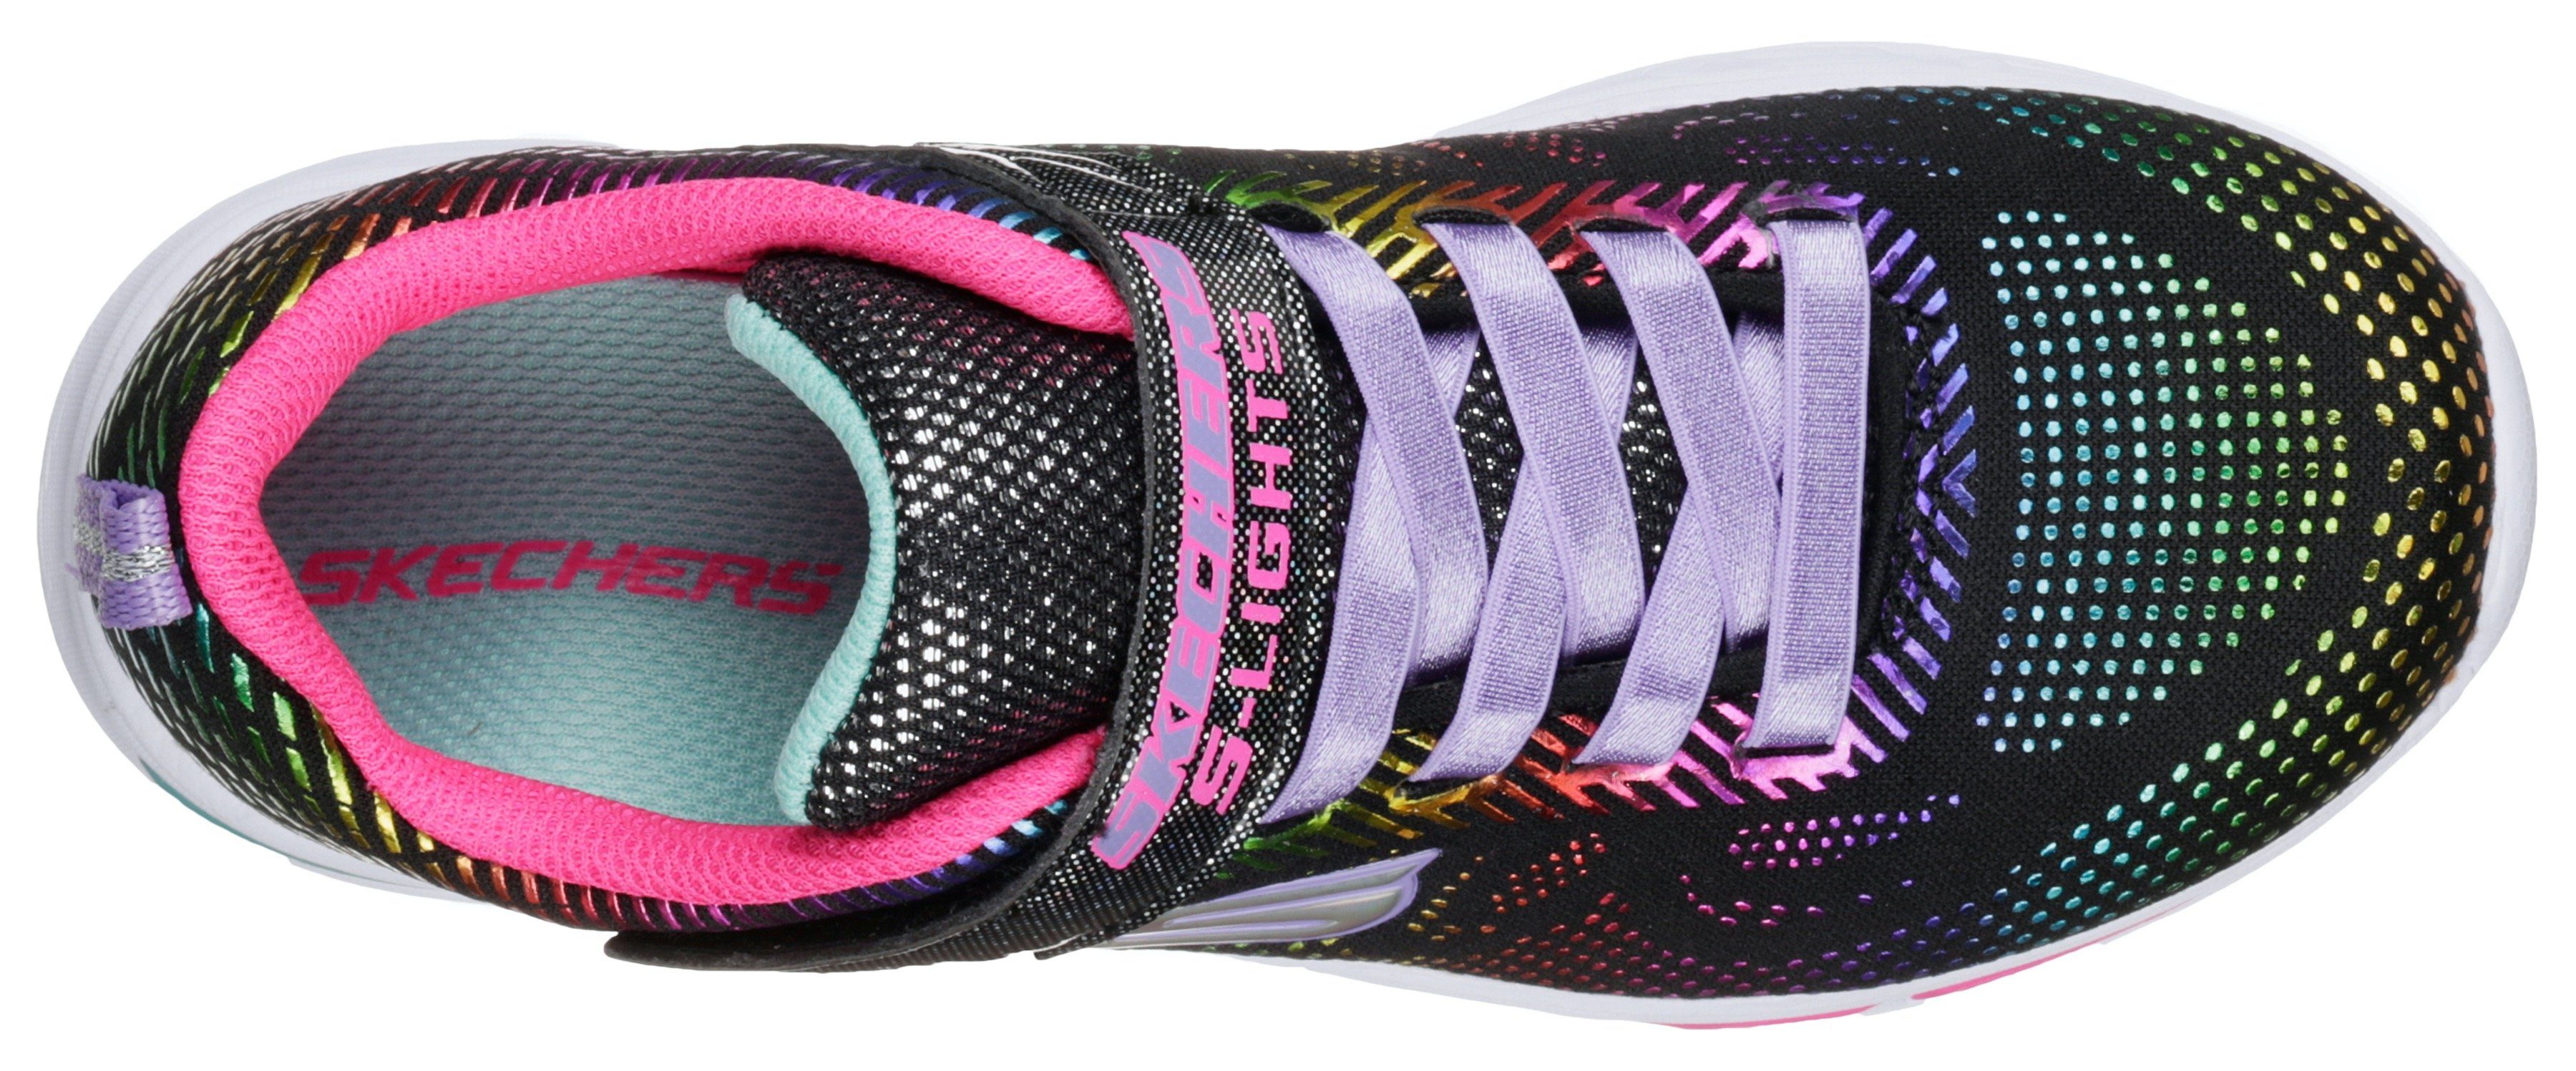 Blinkschuh blinkender Kids mit N`Dream Sneaker Laufsohle LITEBEAMS-Gleam Skechers schwarz-regenbogenfarben-glitzer